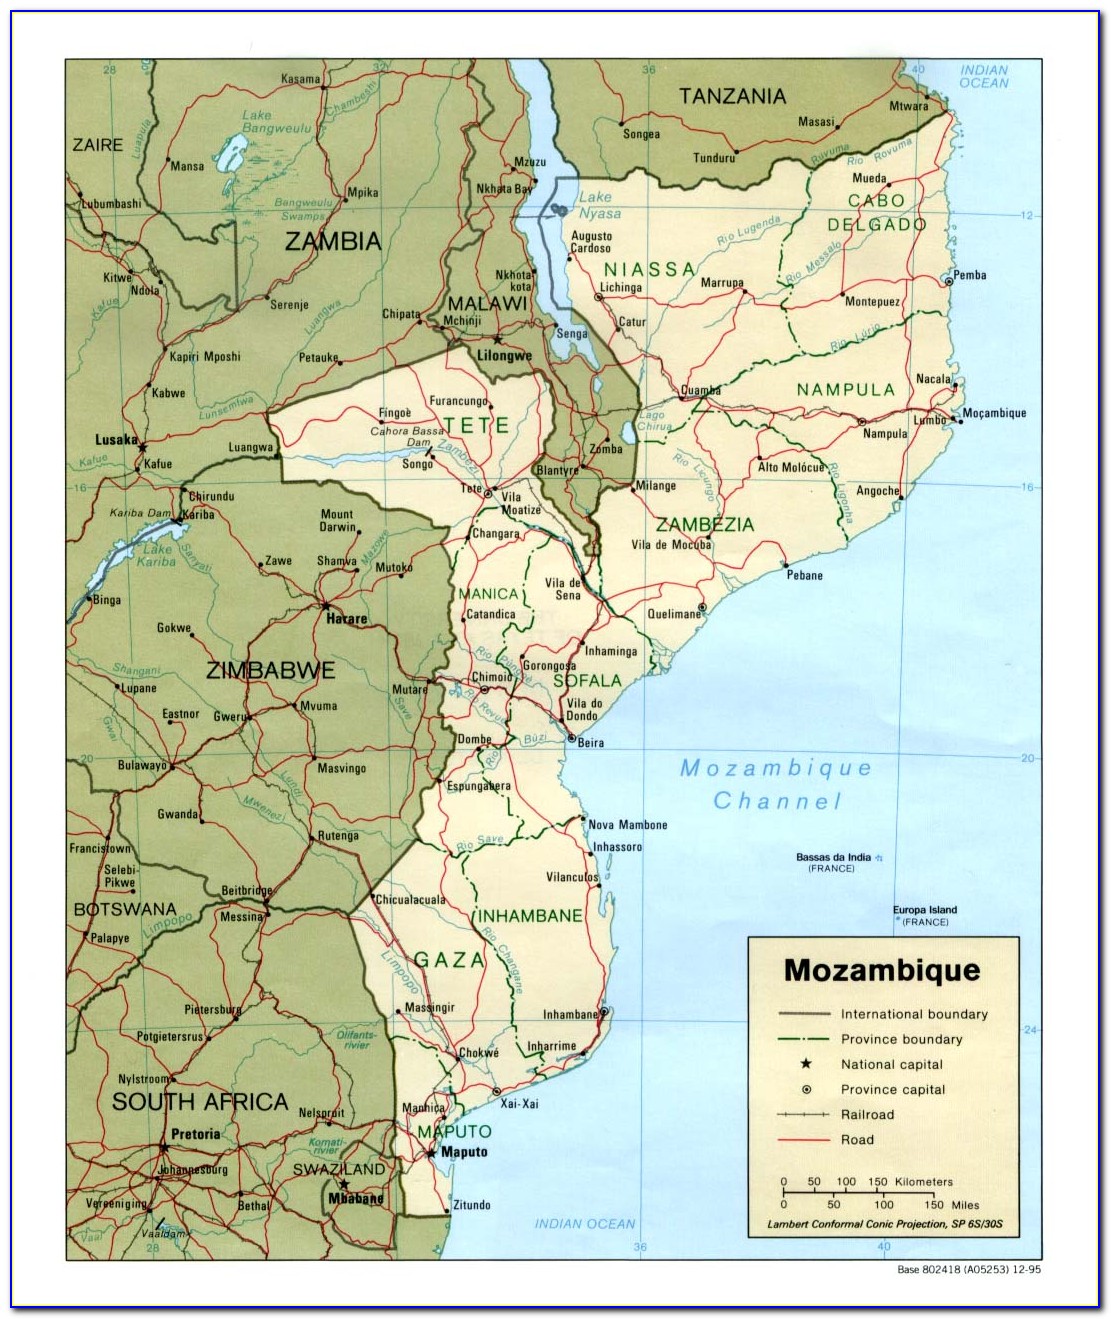 Beira Port Mozambique Map